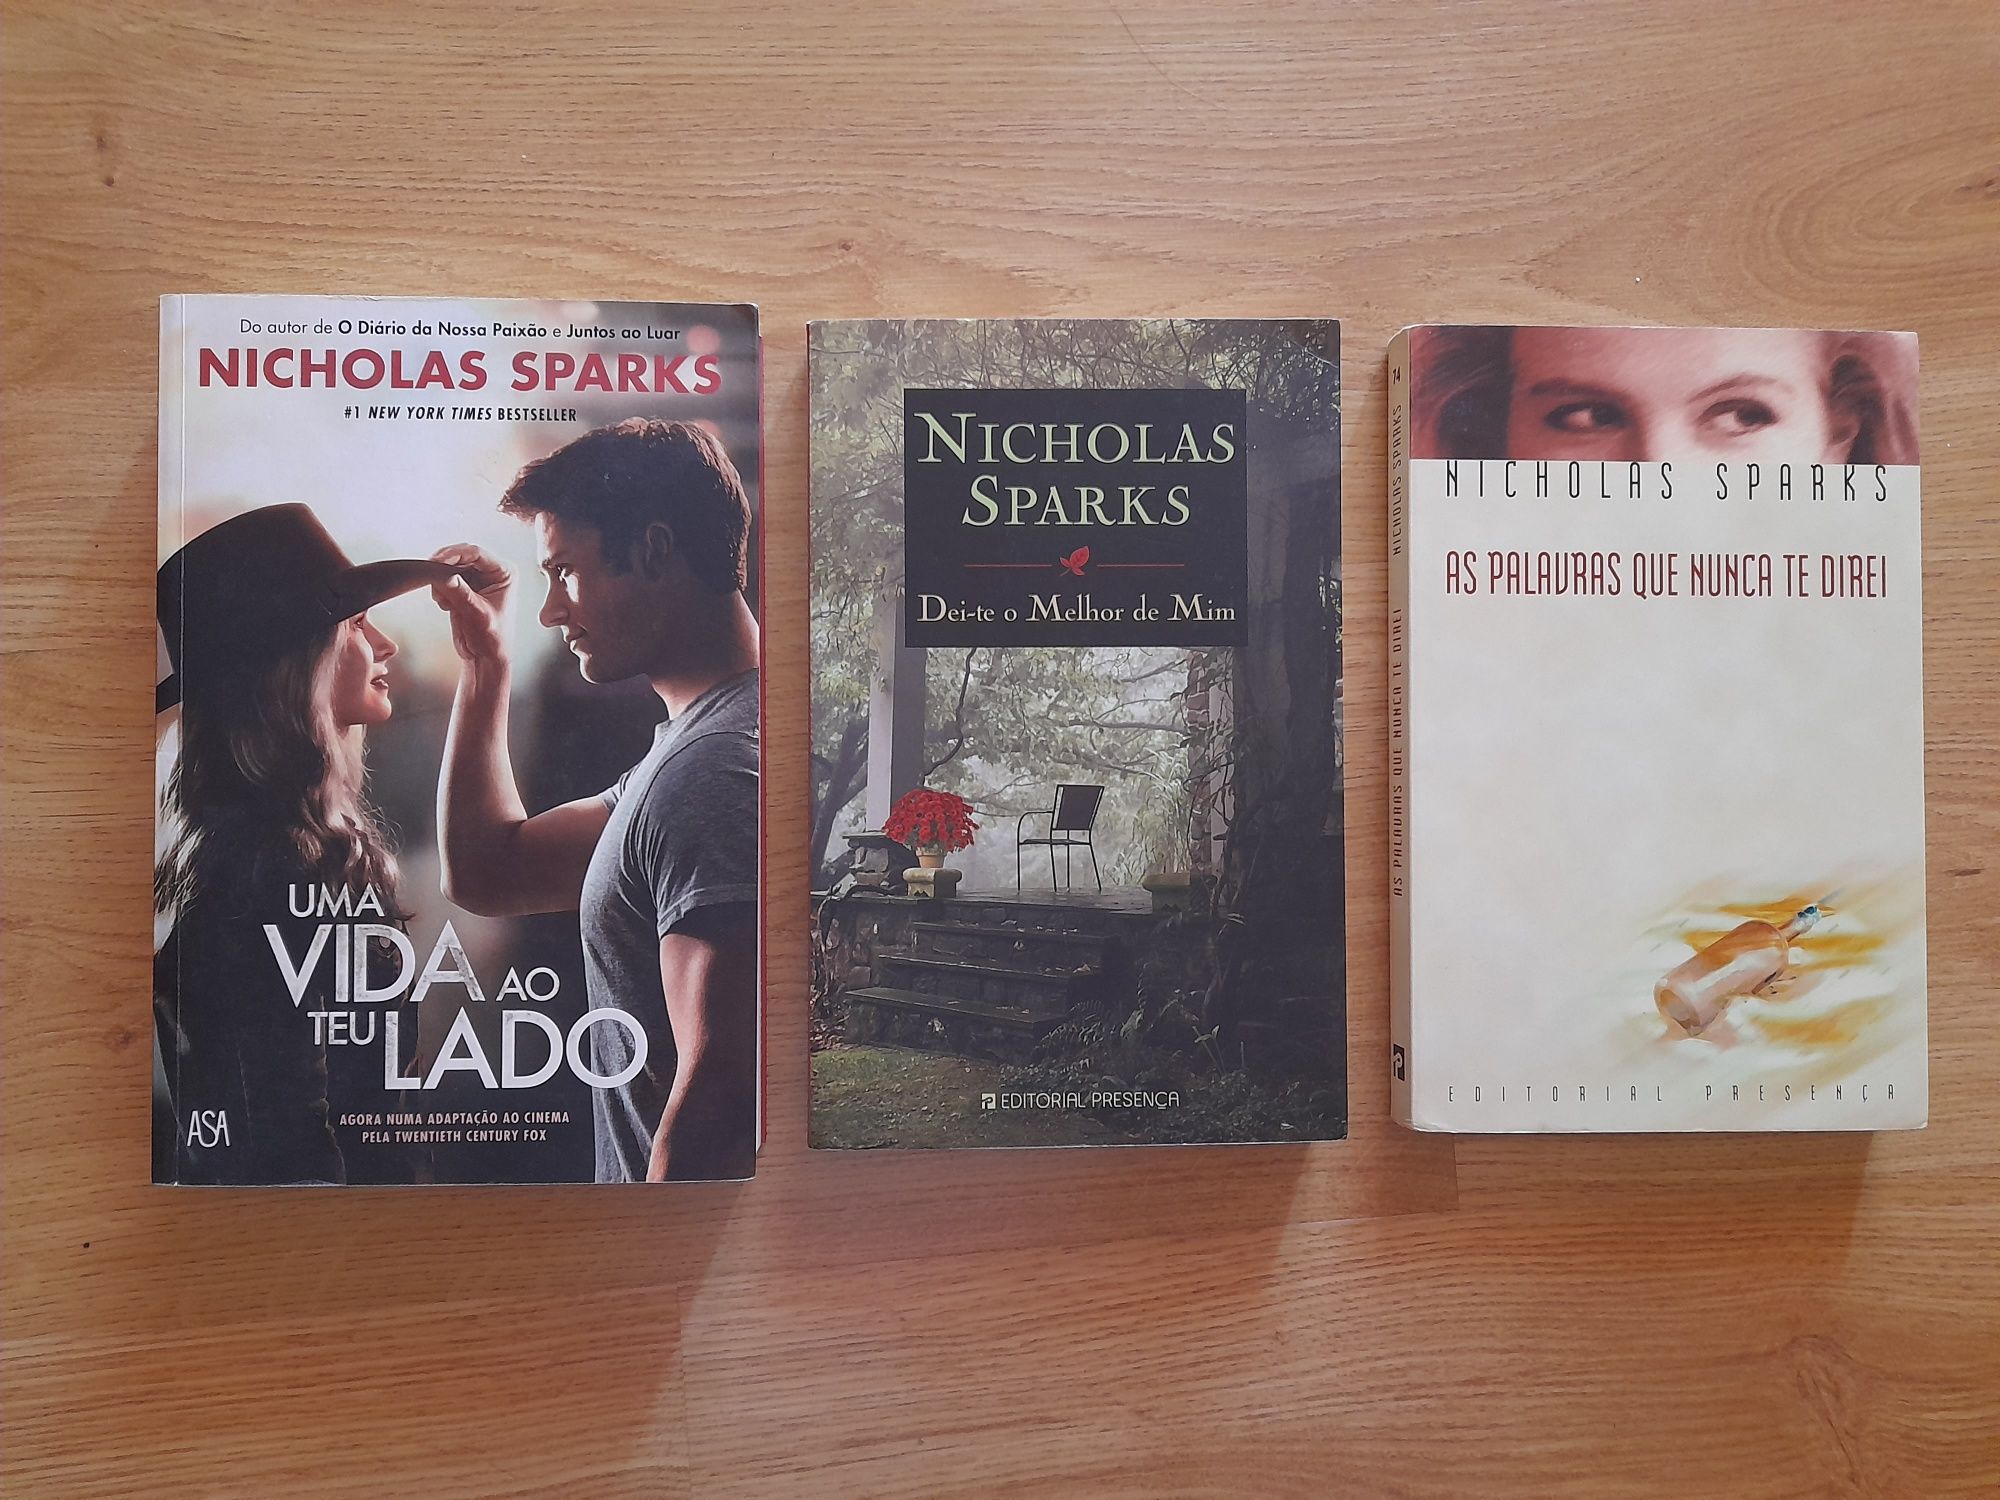 Livros de Nicholas Sparks, portes incluidos